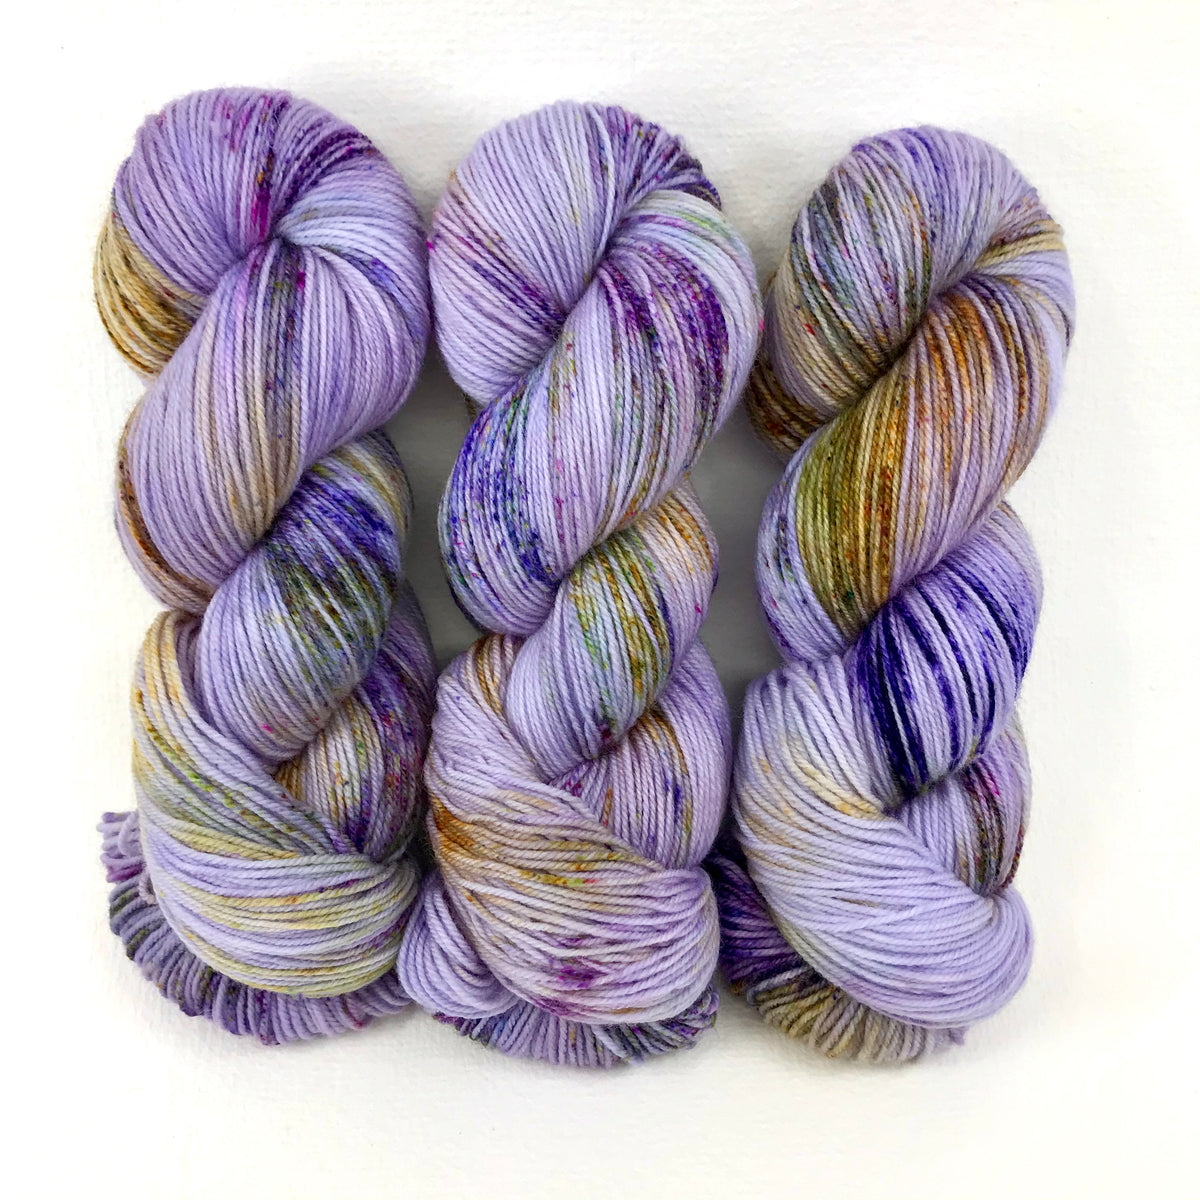 Lavender Fields Forever - Revival Fingering - Dyed Stock